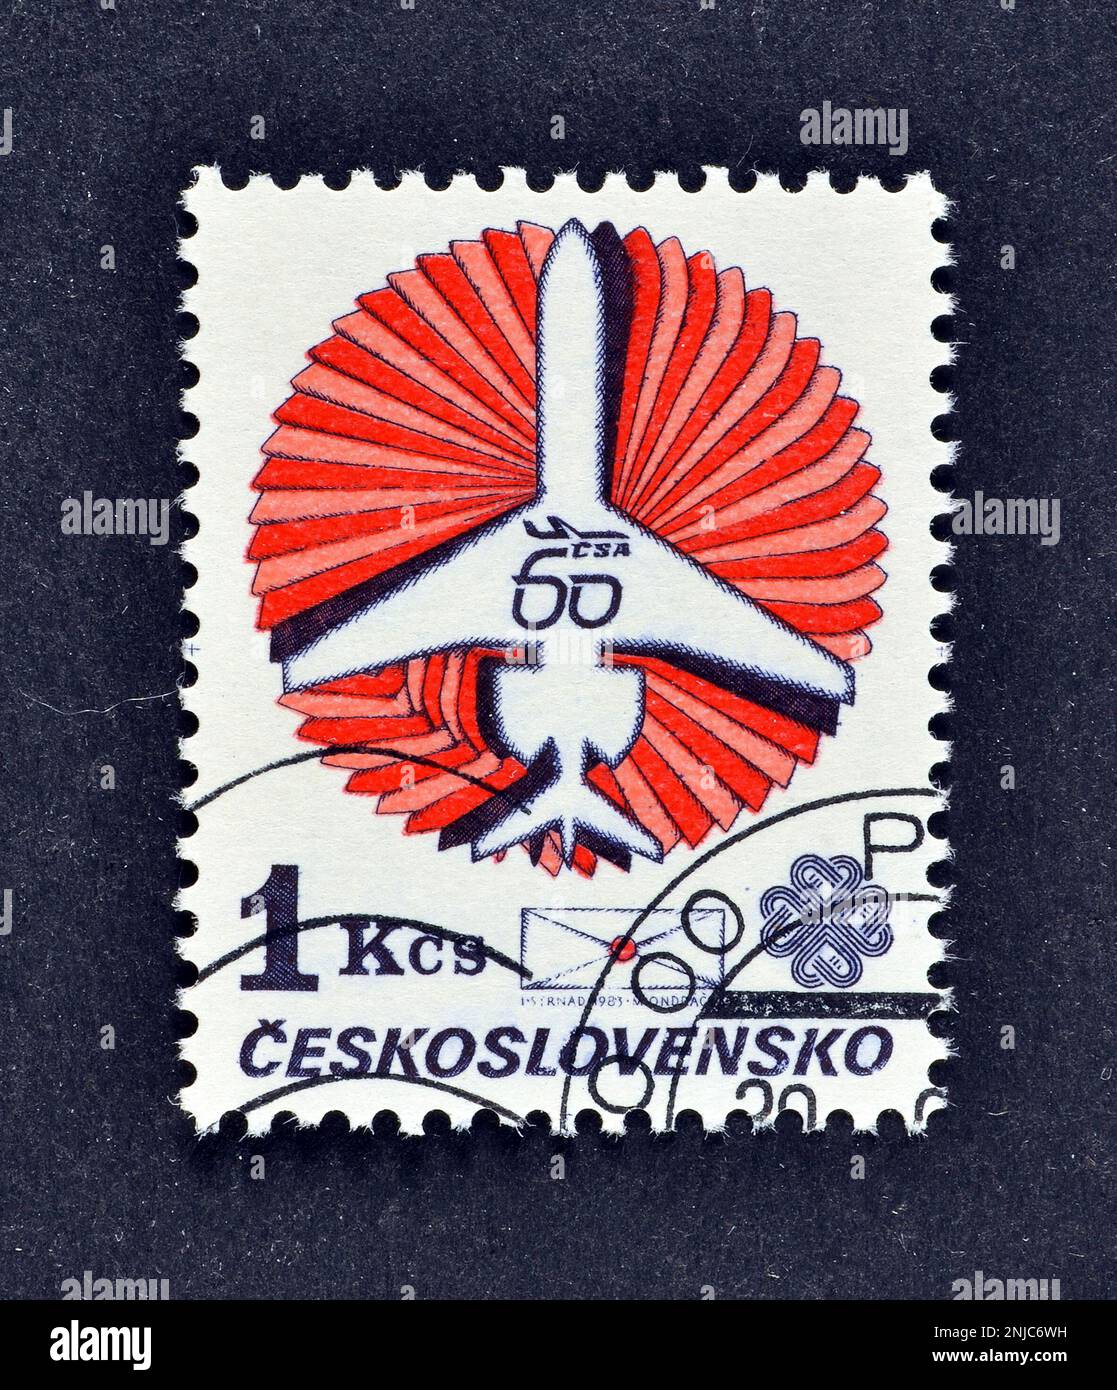 Annullierte Briefmarke gedruckt von der Tschechoslowakei, die Ilyushin Il-62m und Umschlag, Czechoslovak Airlines, 60. Jubiläum, um 1983 zeigt. Stockfoto